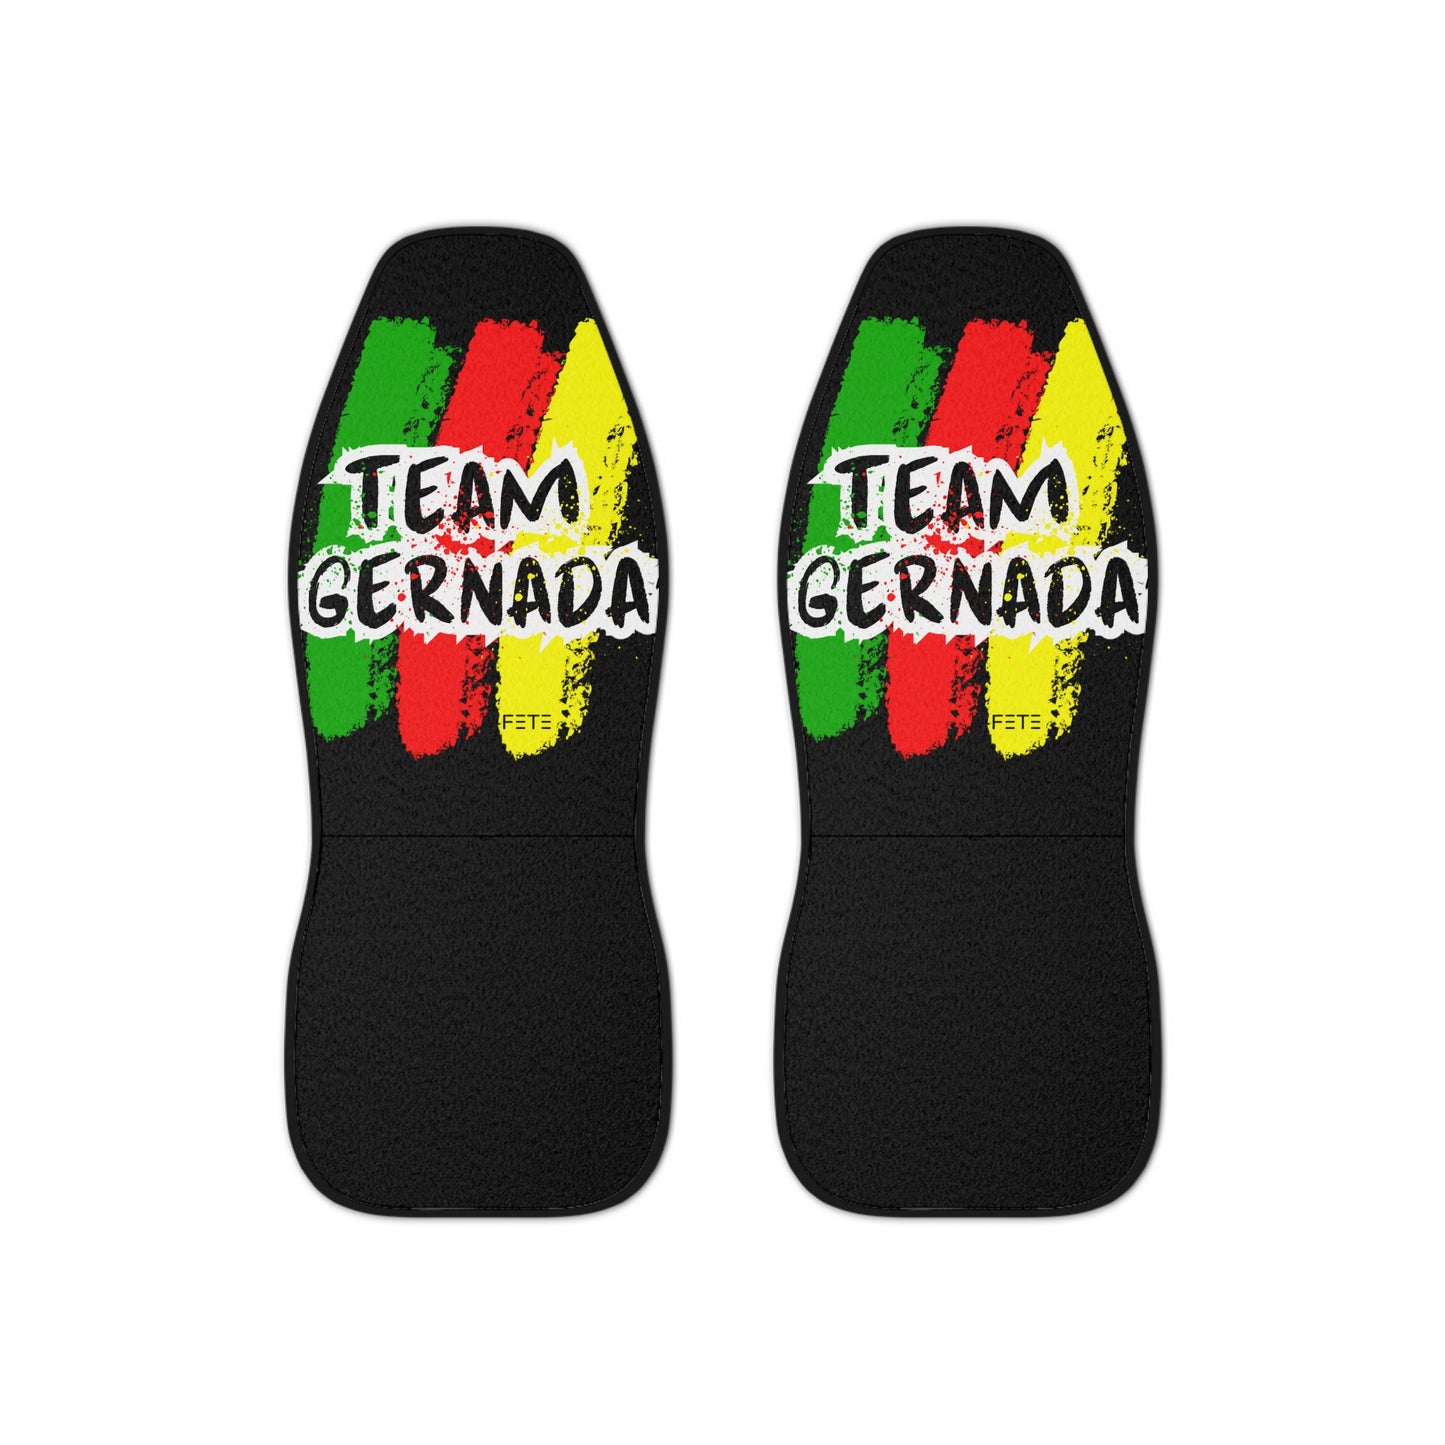 Team Grenada Car Seat Covers